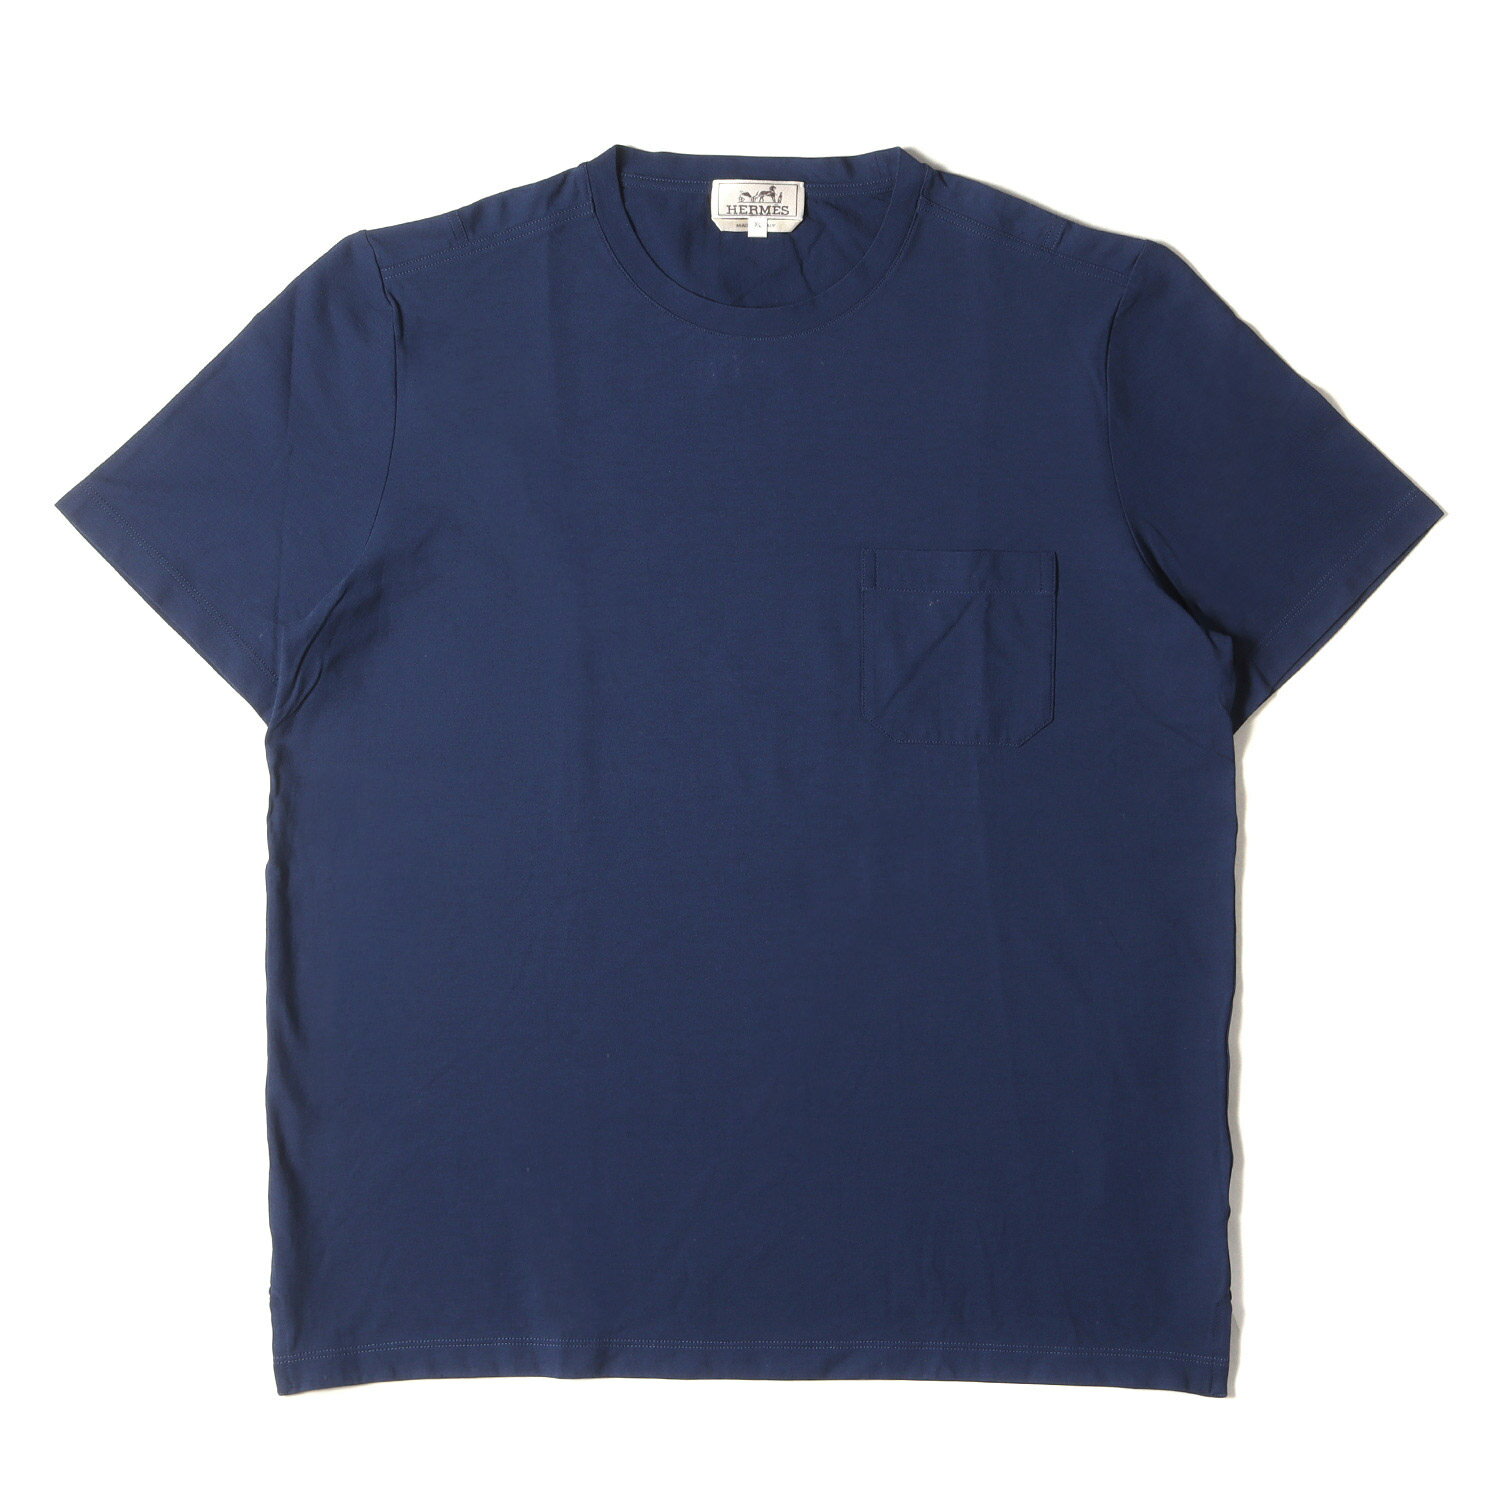 HERMES エルメス Tシャツ サイズ:XL 20SS Hショルダー ポケット ジャージー クルーネック 半袖Tシャツ 無地 ベーシック ネイビー 紺 イタリア製 トップス カットソー